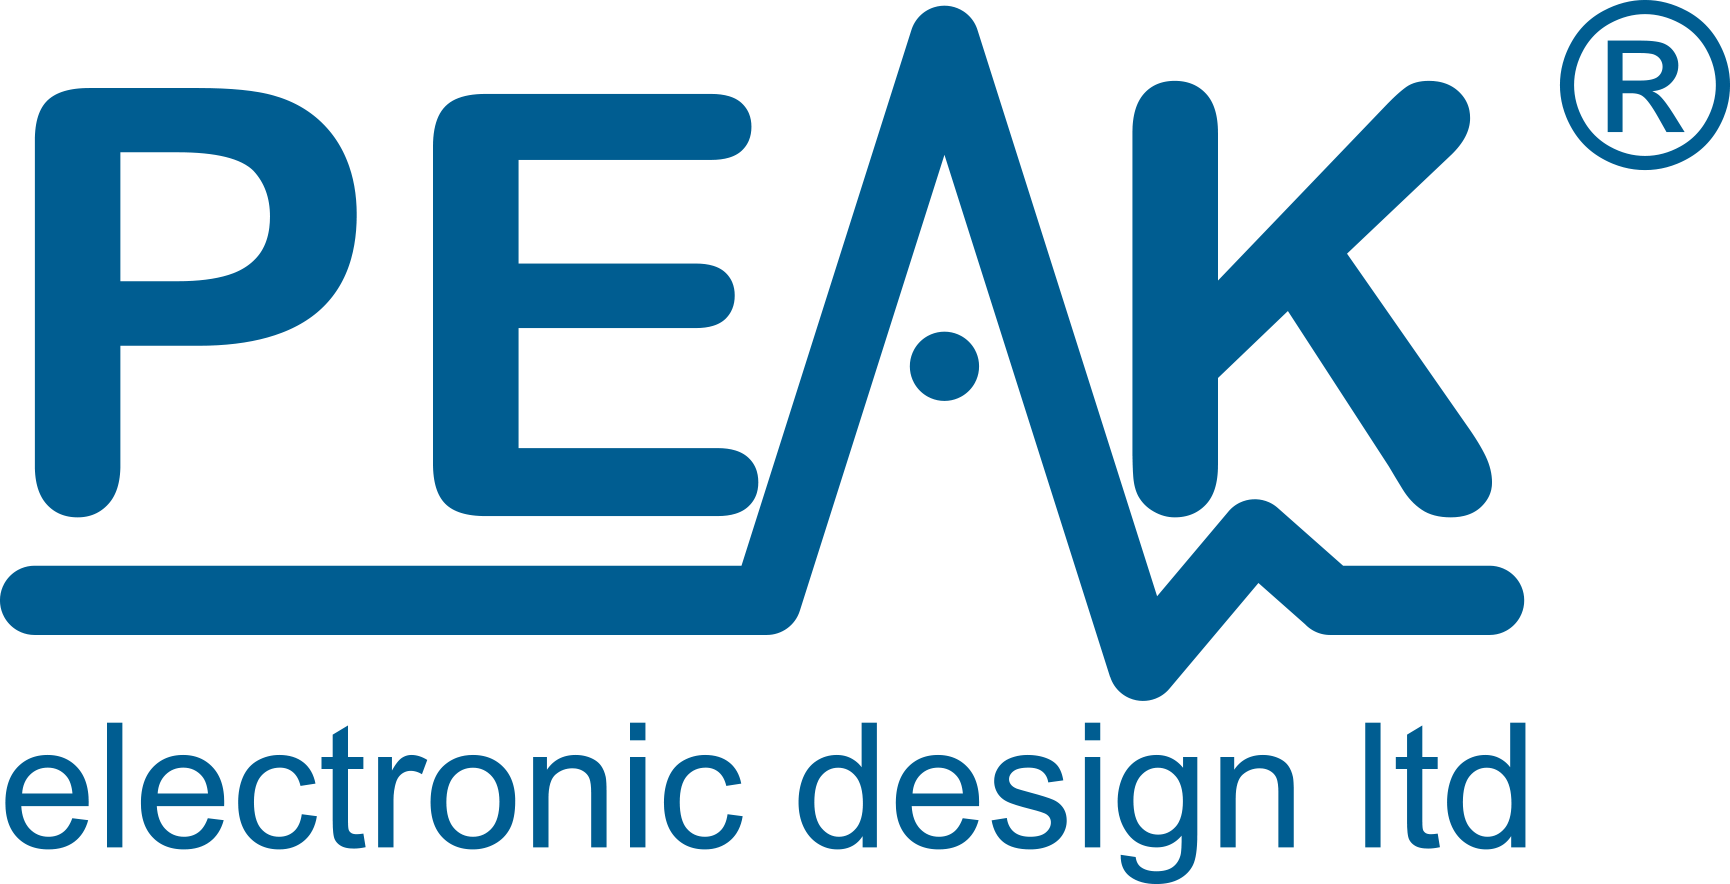 Peak Electronic Design Limited LOGO